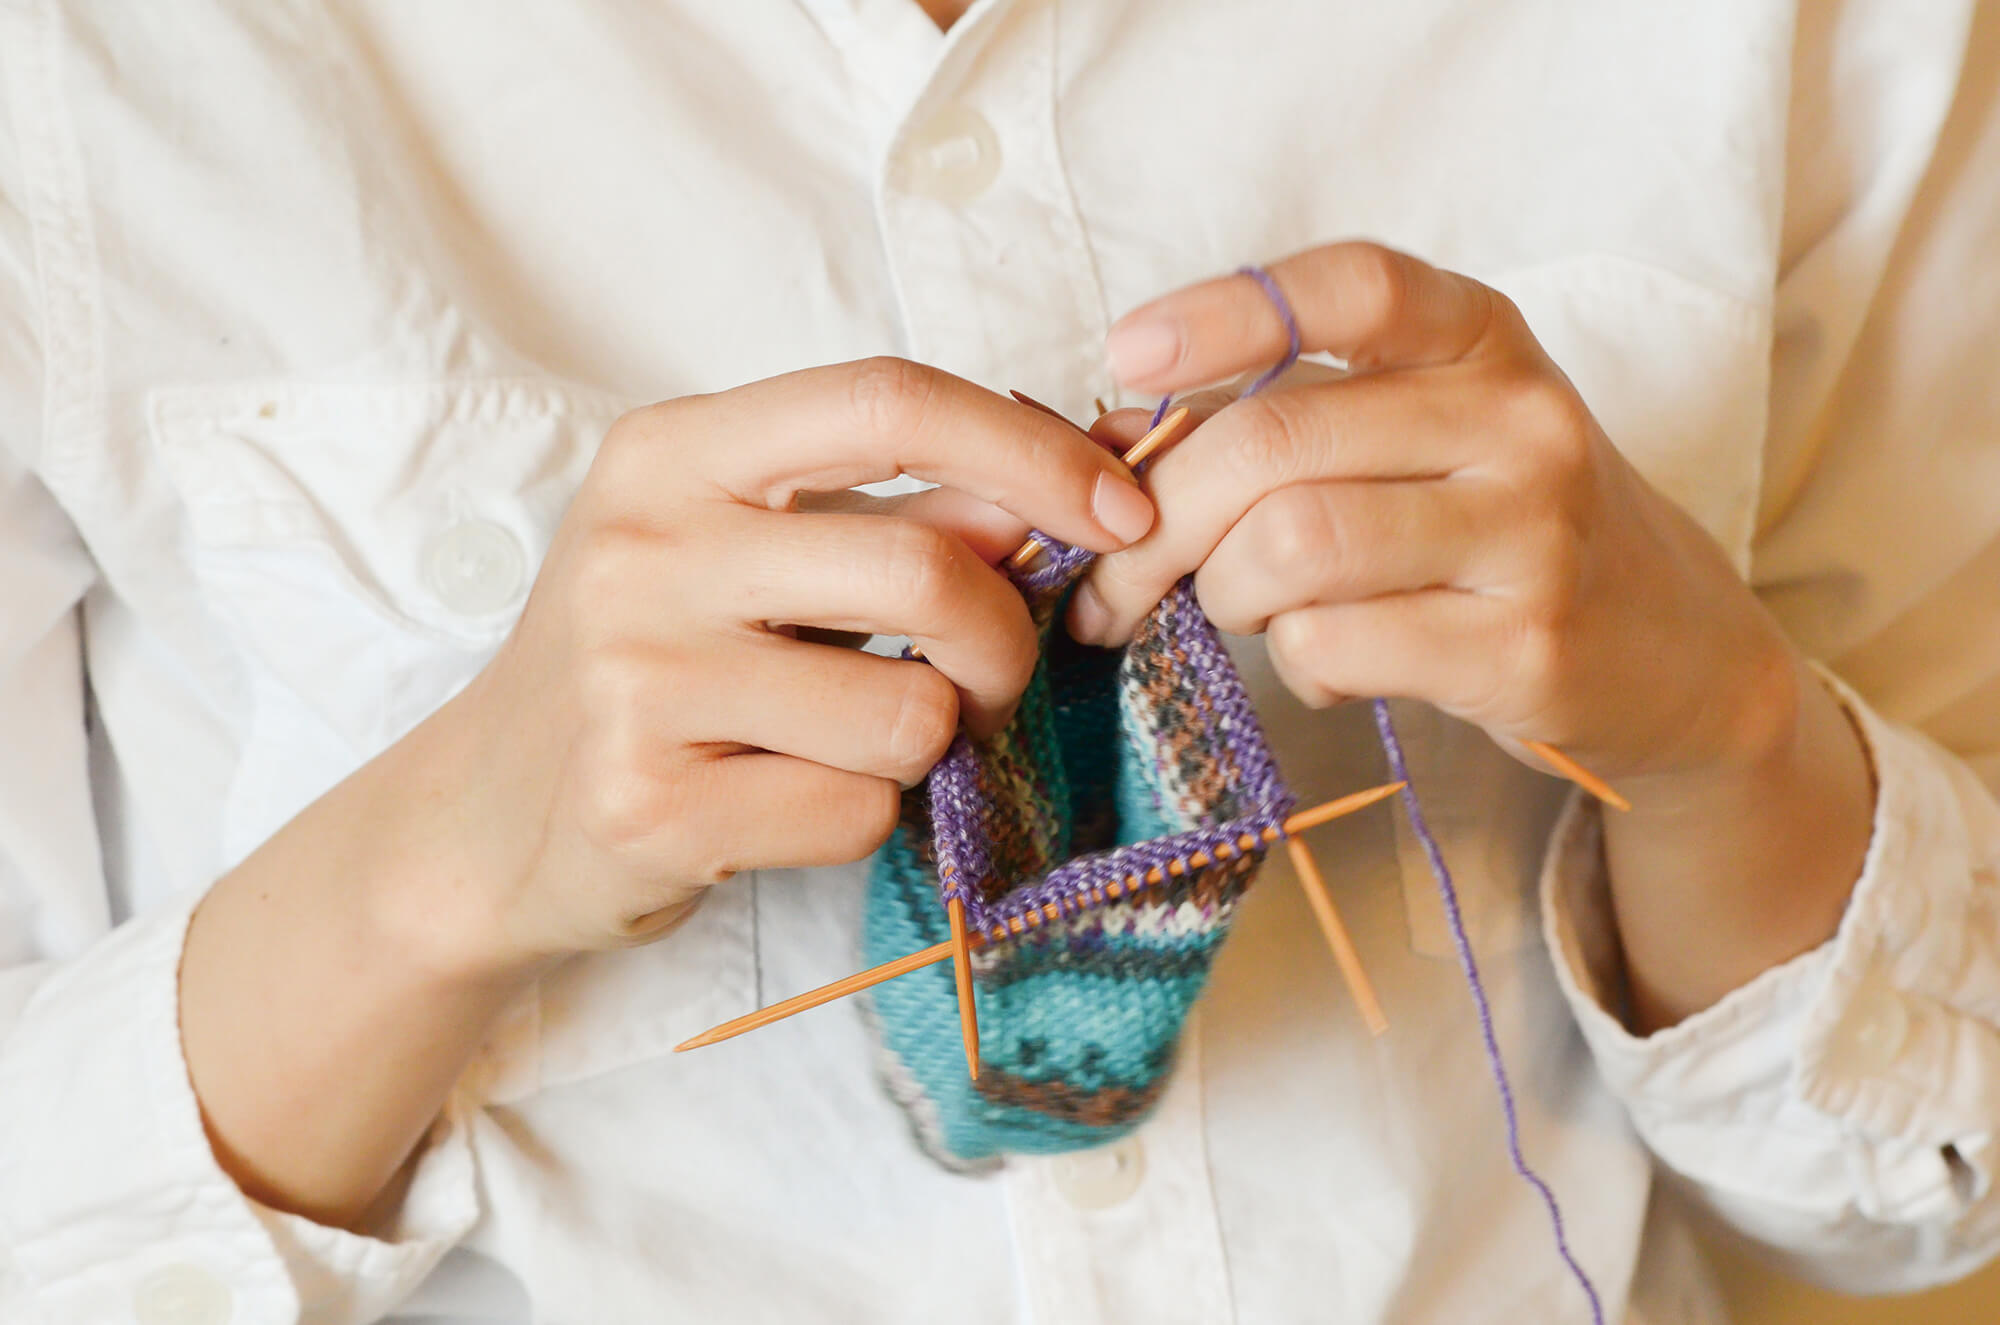 Knitting 3 - Siulų dama - siūlai mezgėjoms megzti kojines megztinius šalikus šalikas megztinis siūlų parduotuvė pigiausi siūlai geriausi pasiūlymai nemokama registracija - Siūlų Dama Siūlų pasaulis https://siuludama.lt